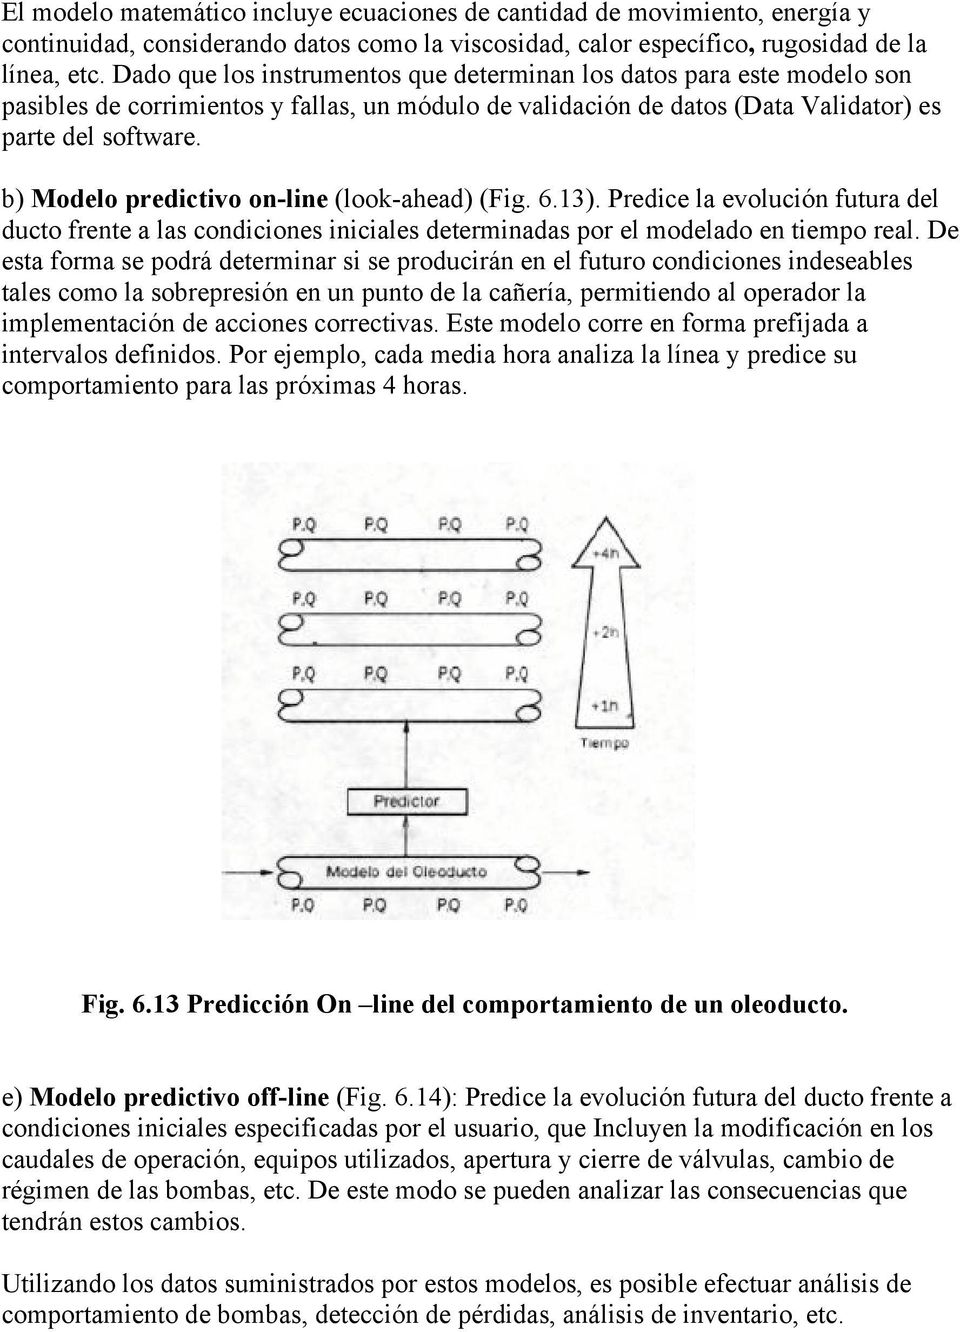 b) Modelo predictivo on-line (look-ahead) (Fig. 6.13). Predice la evolución futura del ducto frente a las condiciones iniciales determinadas por el modelado en tiempo real.